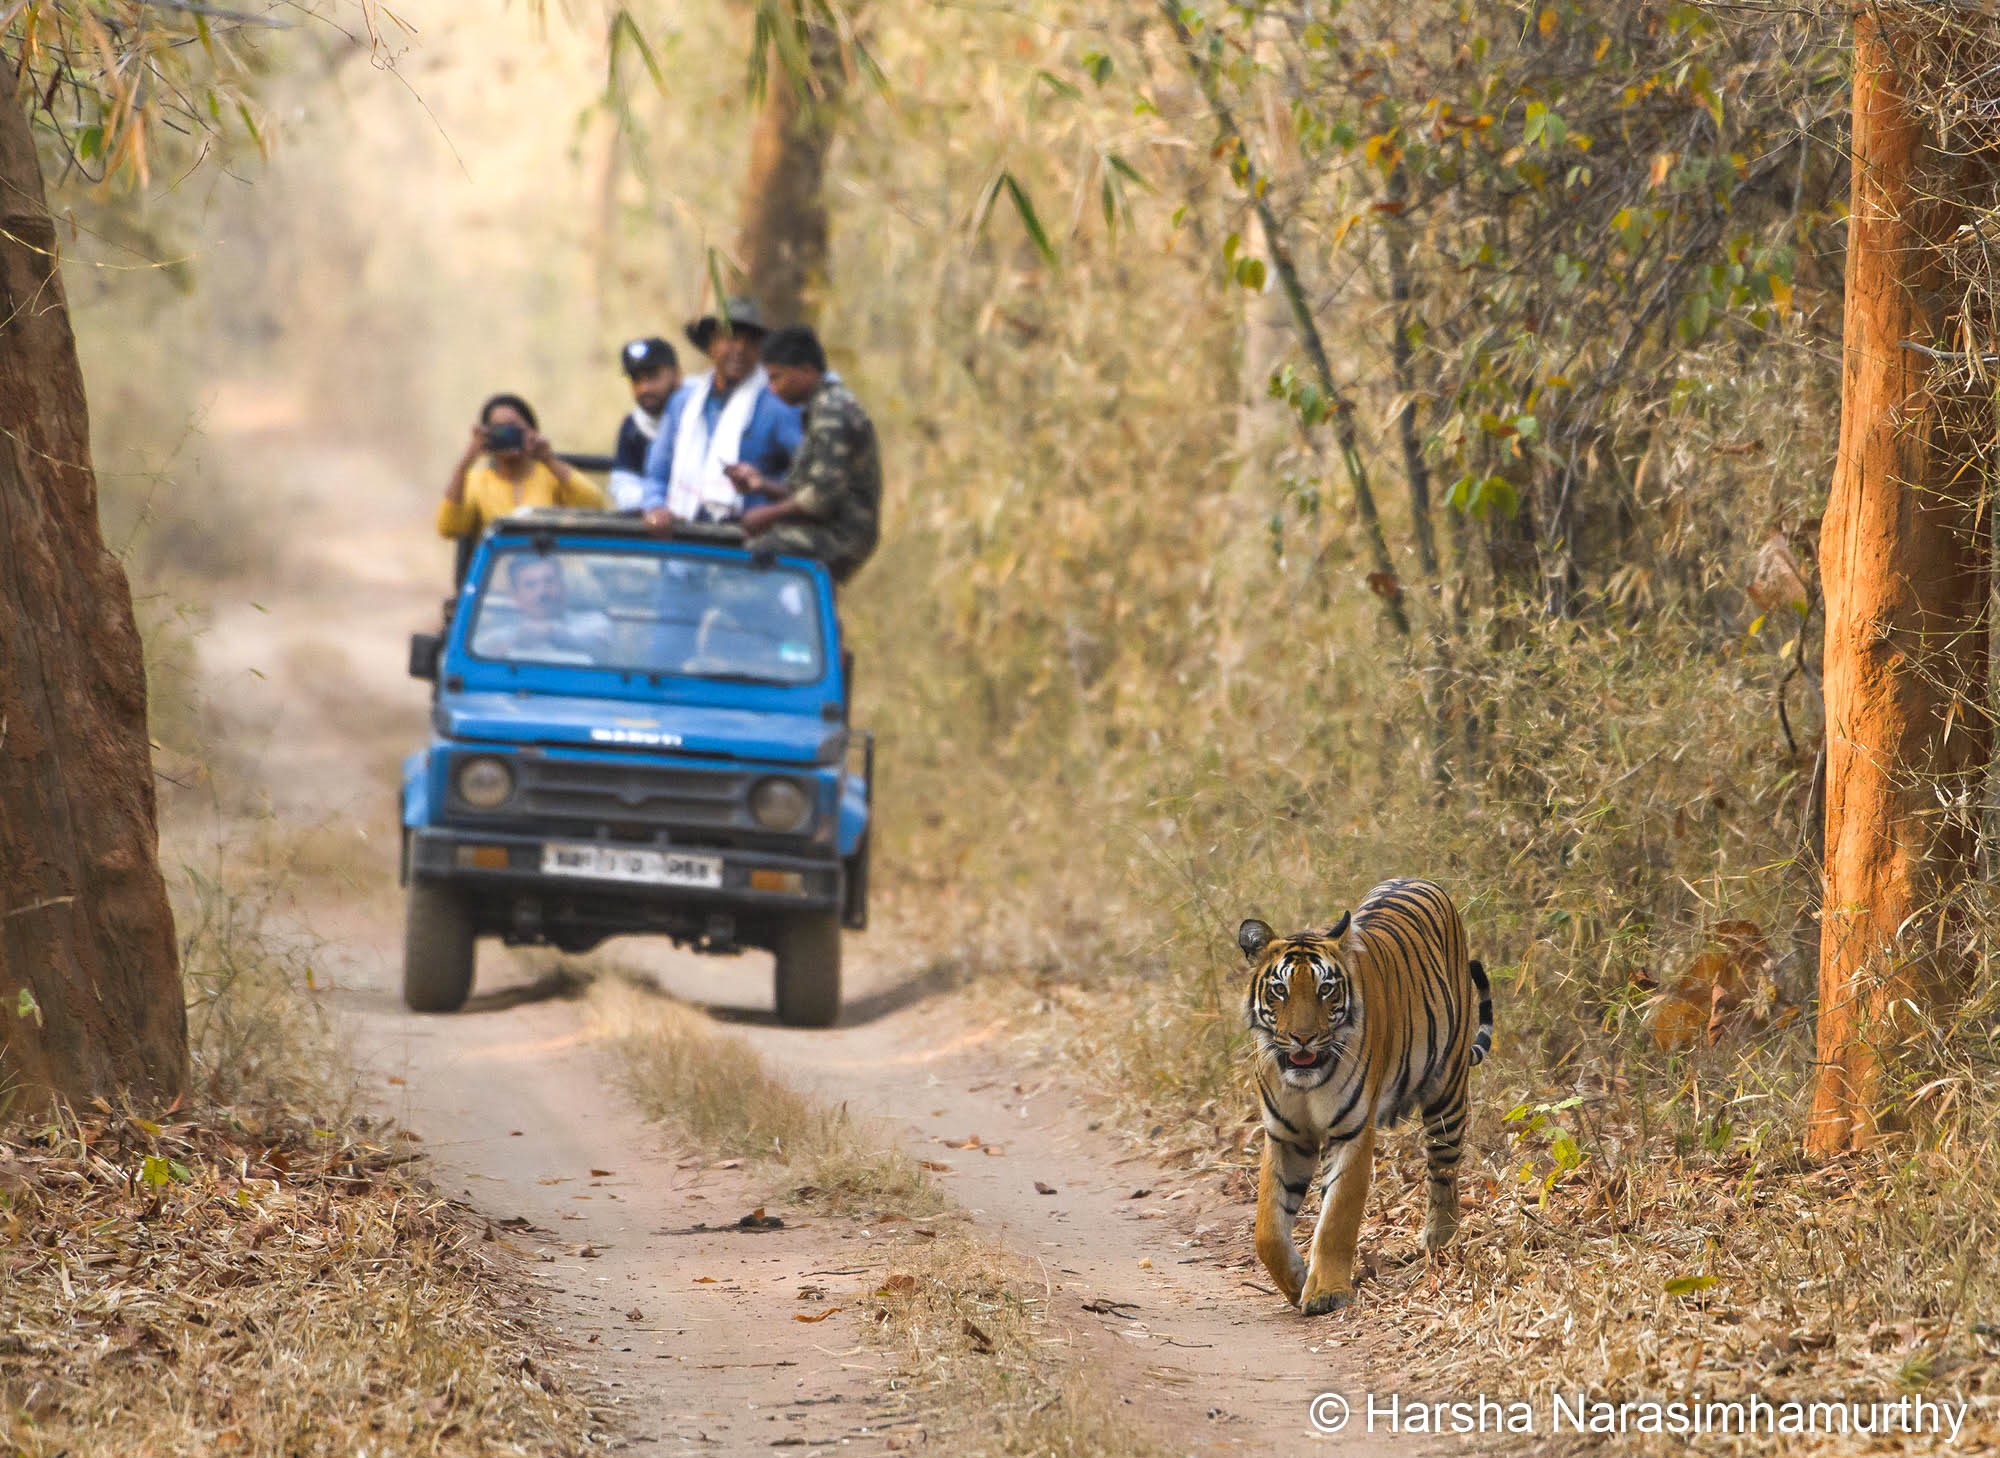 Tiger ecotourism – Harsha Narasimhamurthy